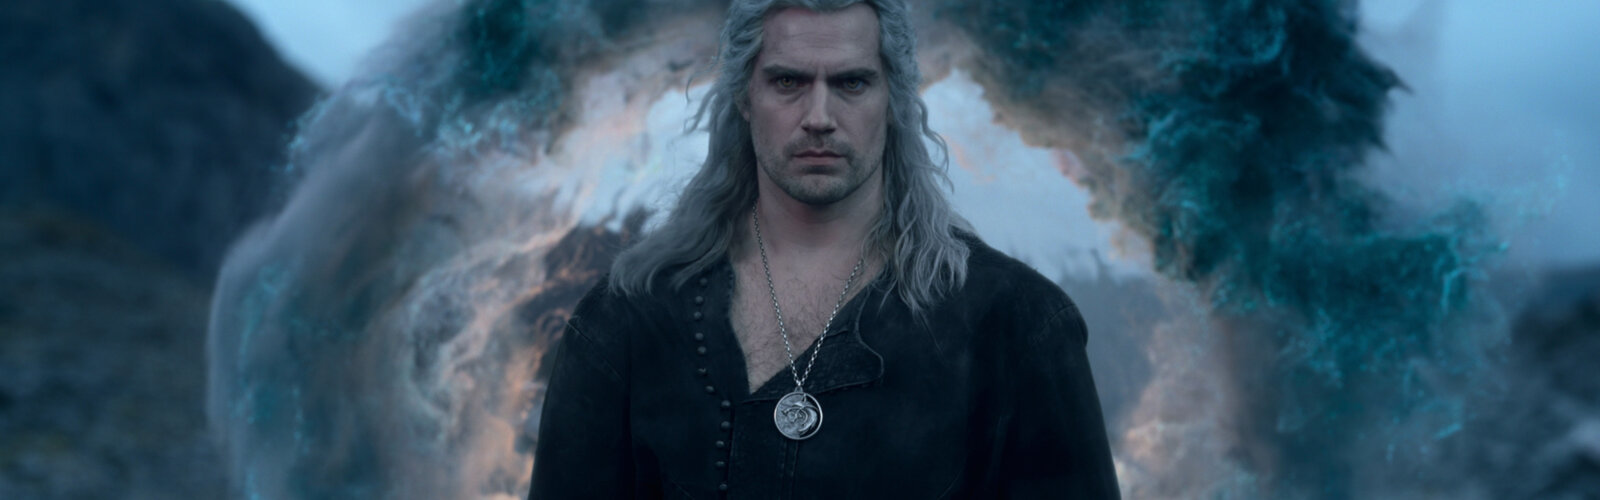 Henry Cavill als Geralt von Rivia in The Witcher